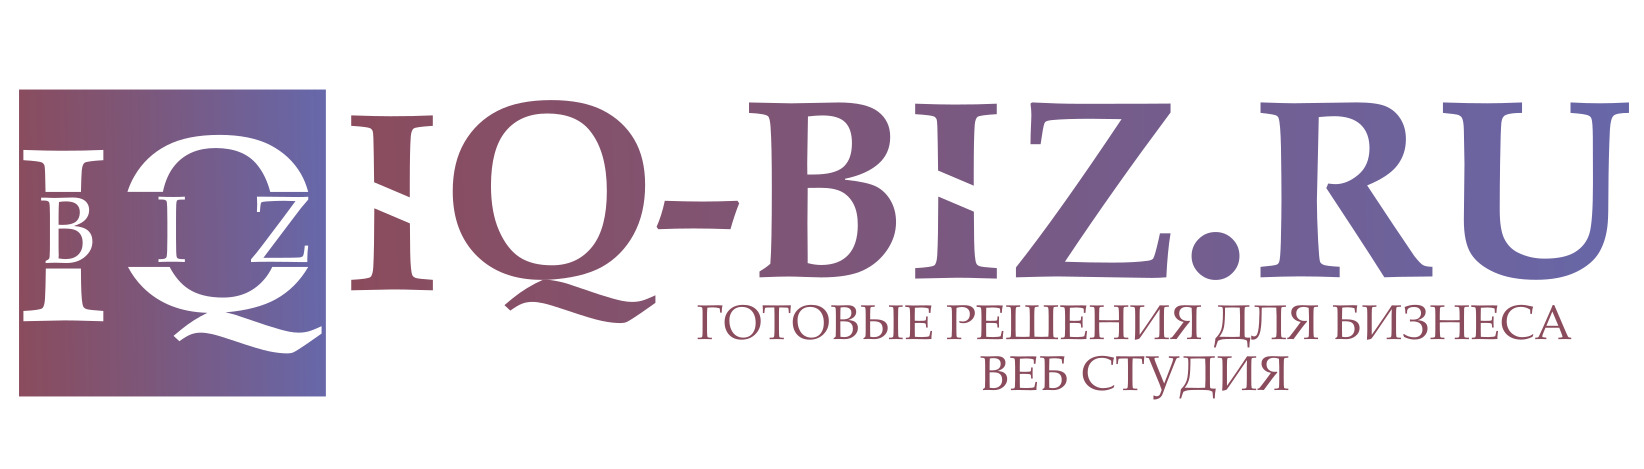 Компания IQ-Biz.ru